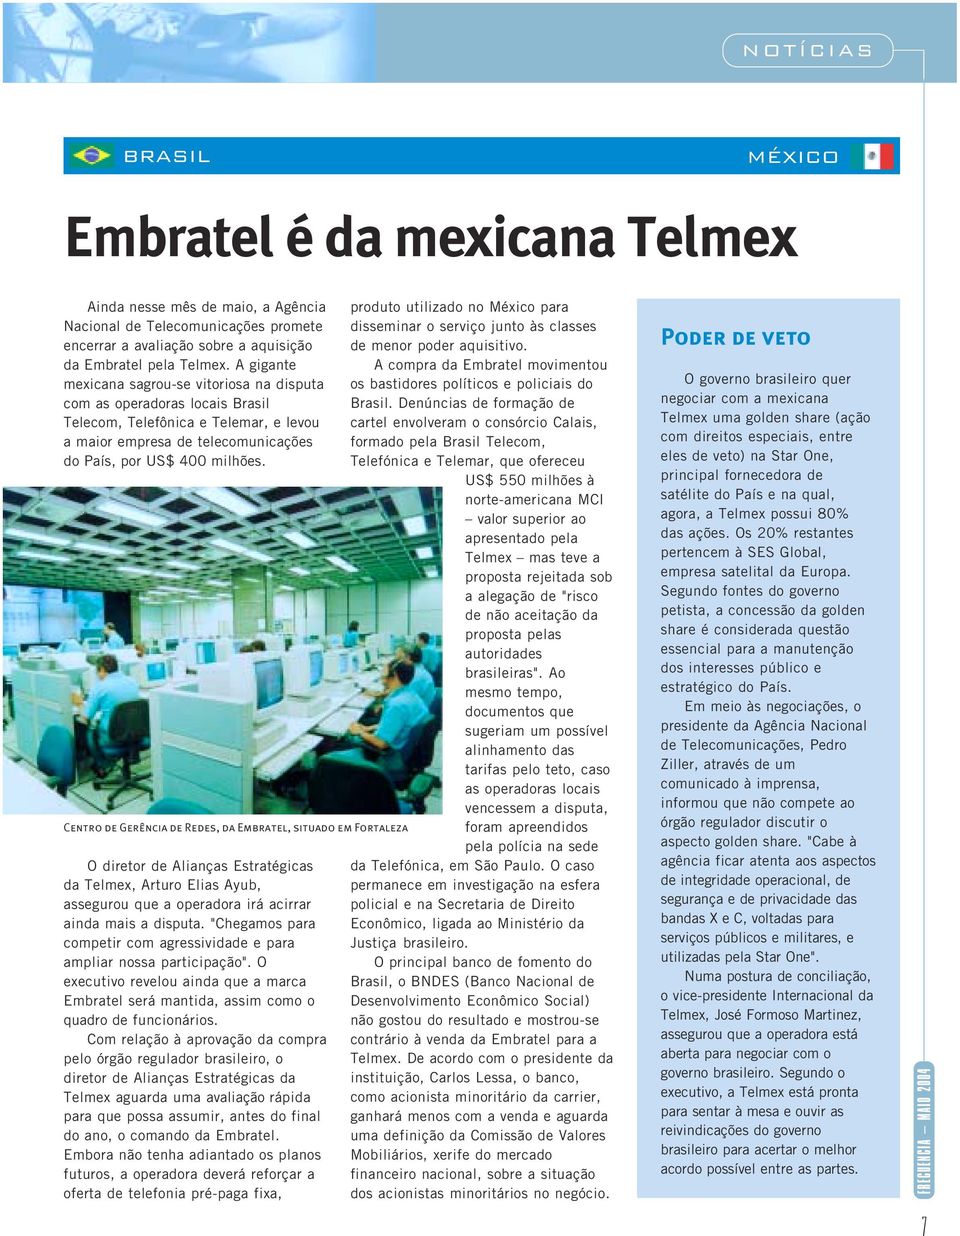 Centro de Gerência de Redes, da Embratel, situado em Fortaleza O diretor de Alianças Estratégicas da Telmex, Arturo Elias Ayub, assegurou que a operadora irá acirrar ainda mais a disputa.